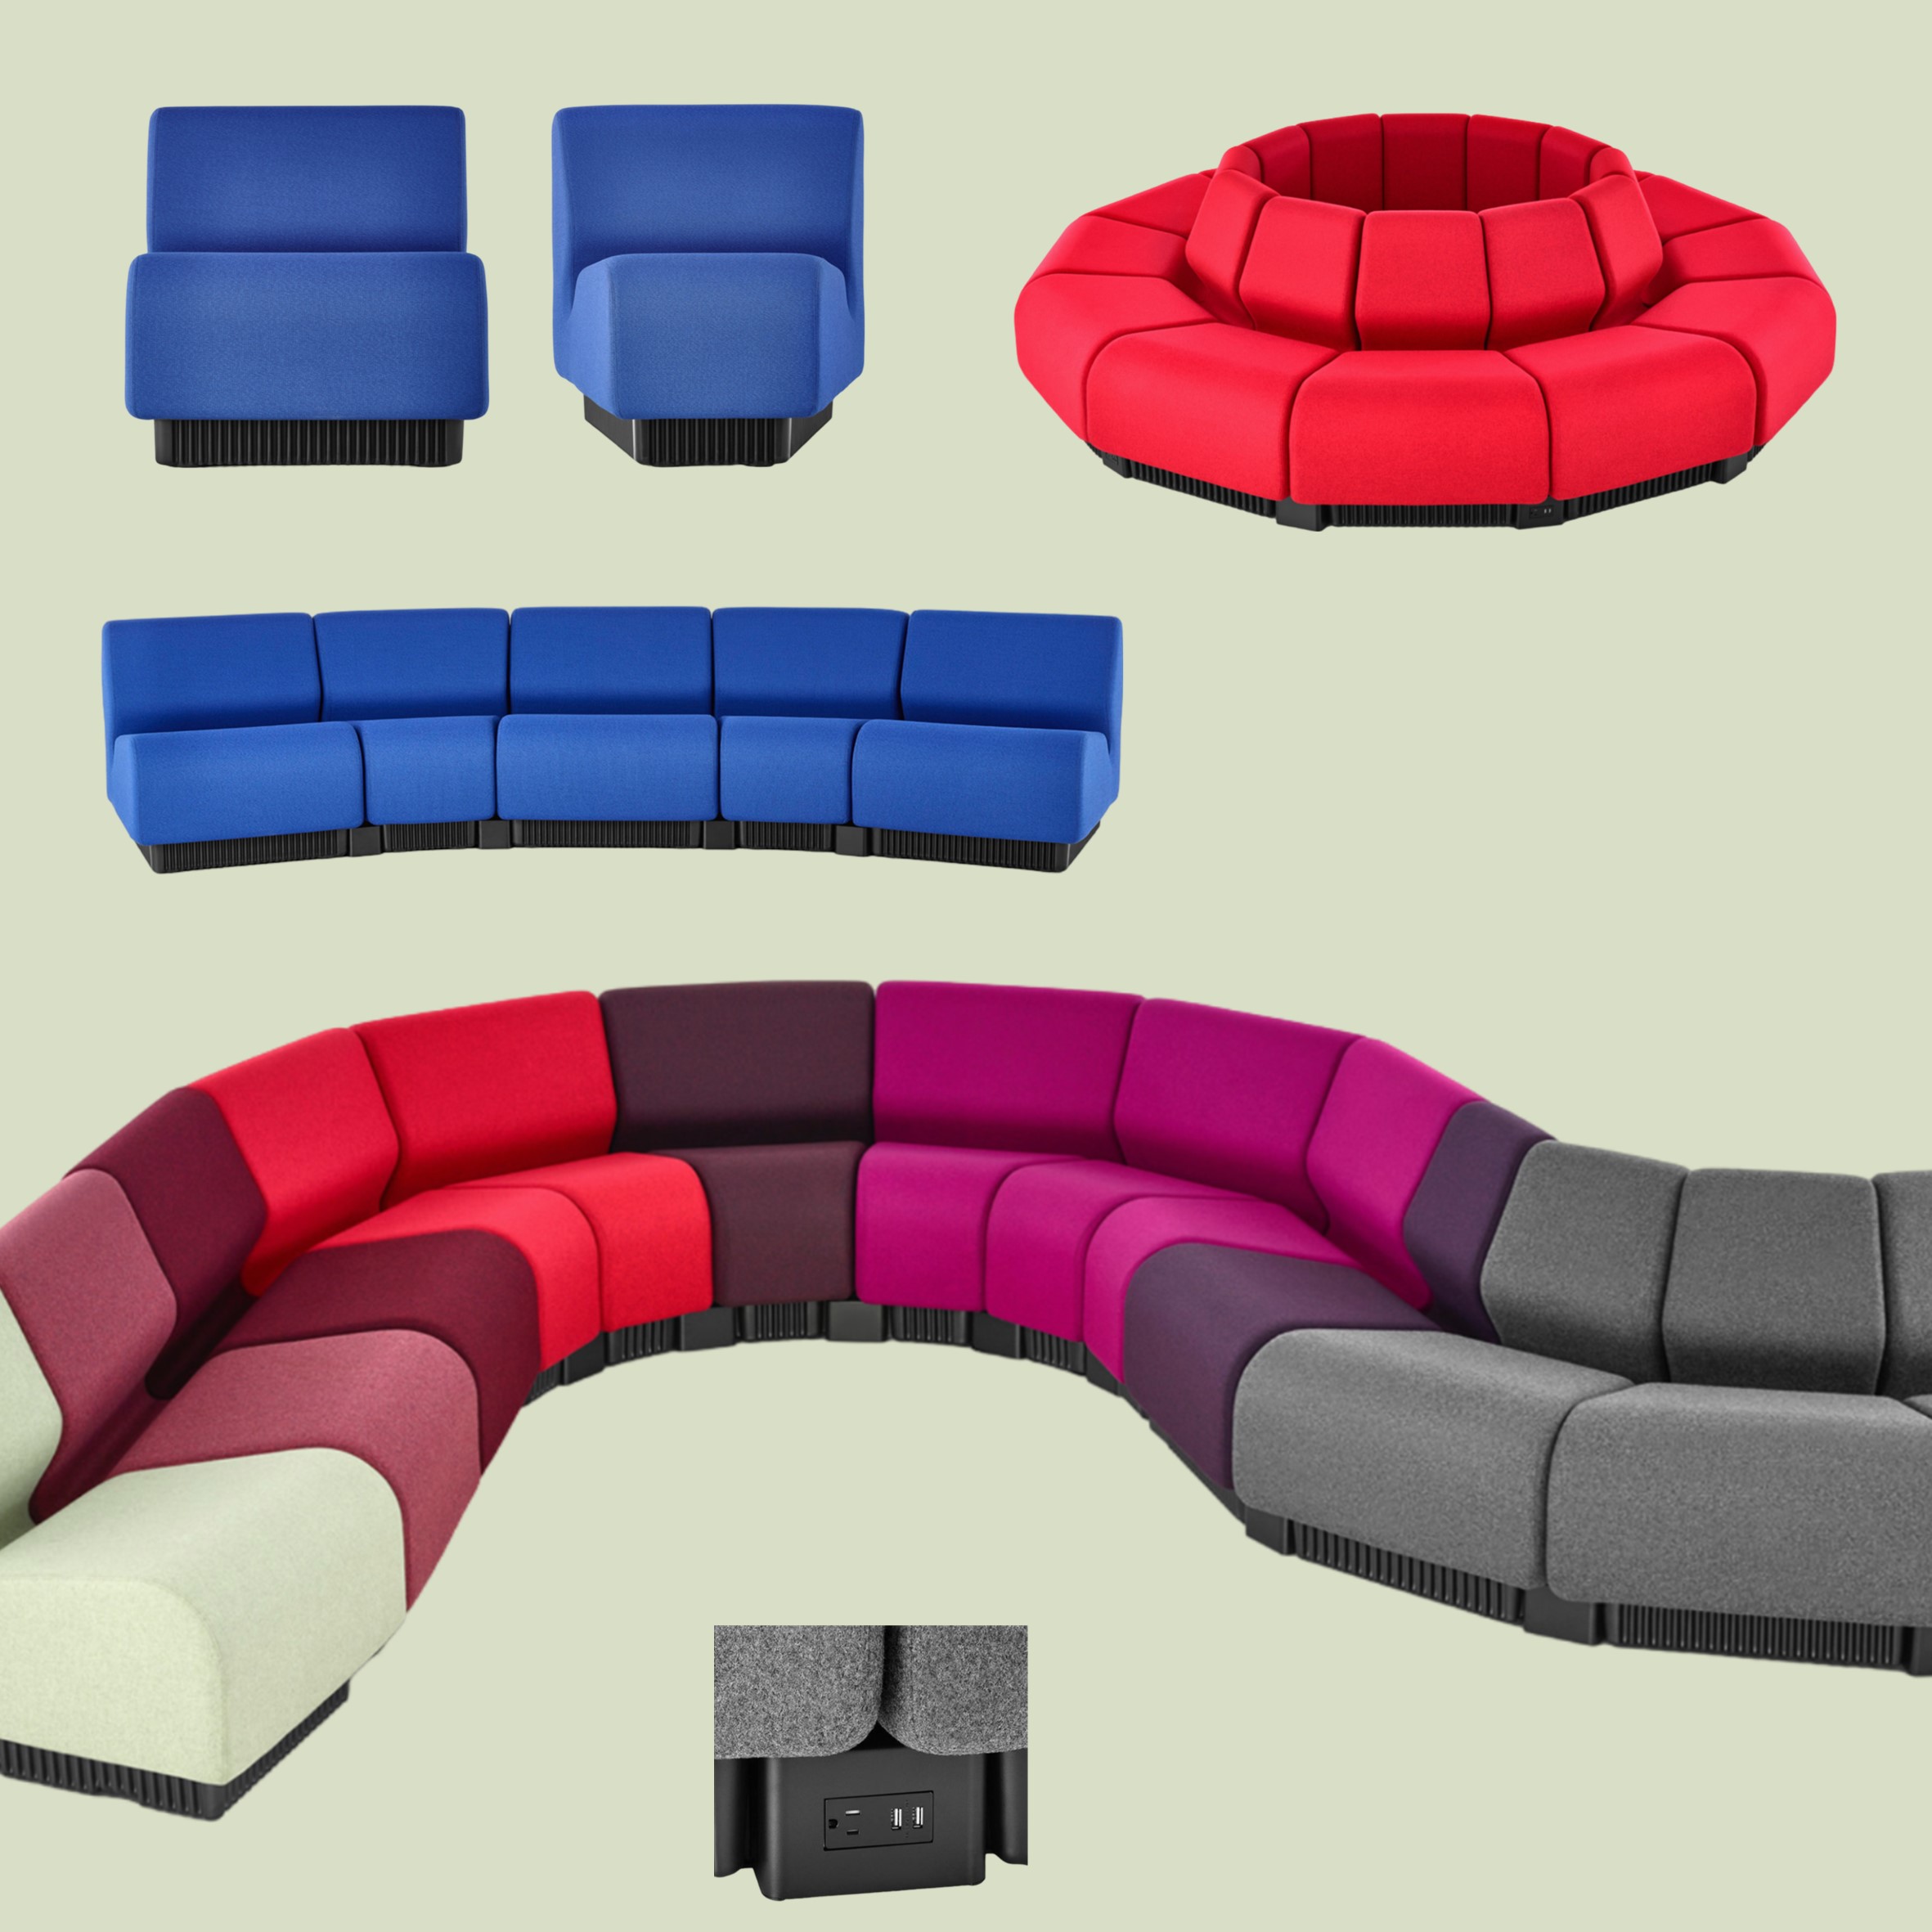 Chadwick Modular Seating: De flexibele revolutie in zitcomfort